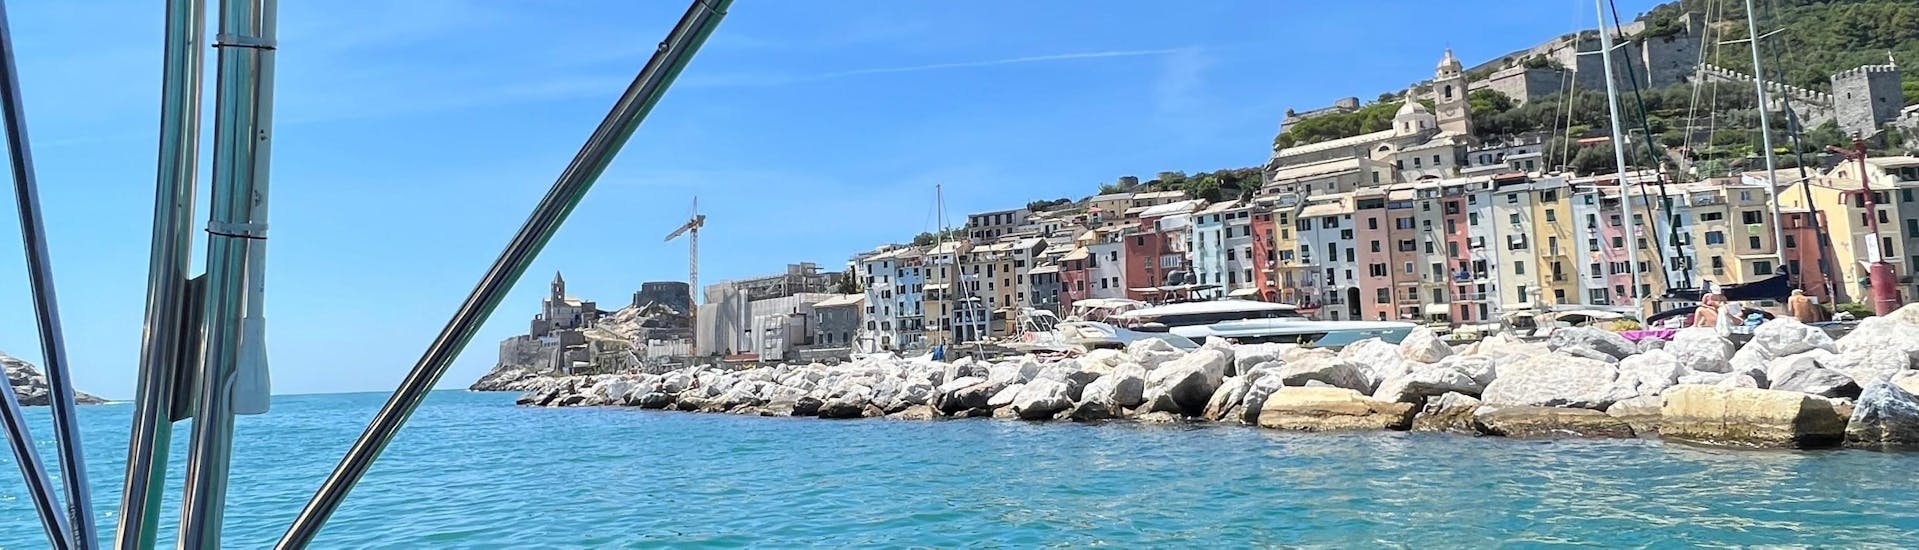 La vista della costa ligure che potete ammirare con una gita in barca con Maestrale Boat Tour Cinque Terre.